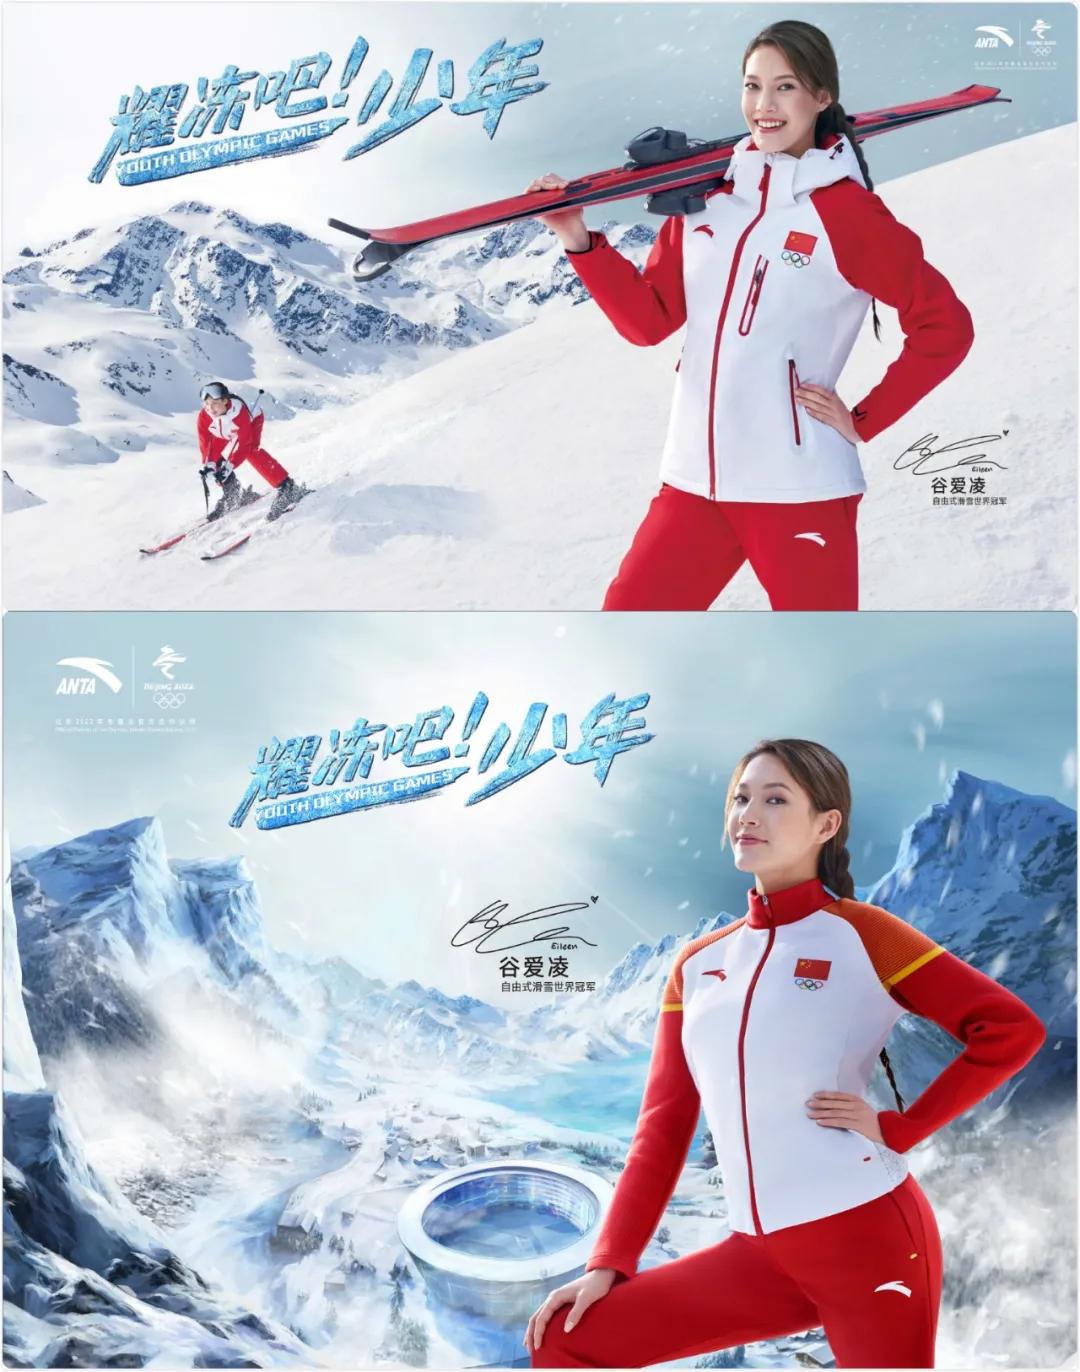 17岁天才美少女代表中国拿下滑雪冠军，却因国籍被键盘侠狂喷…